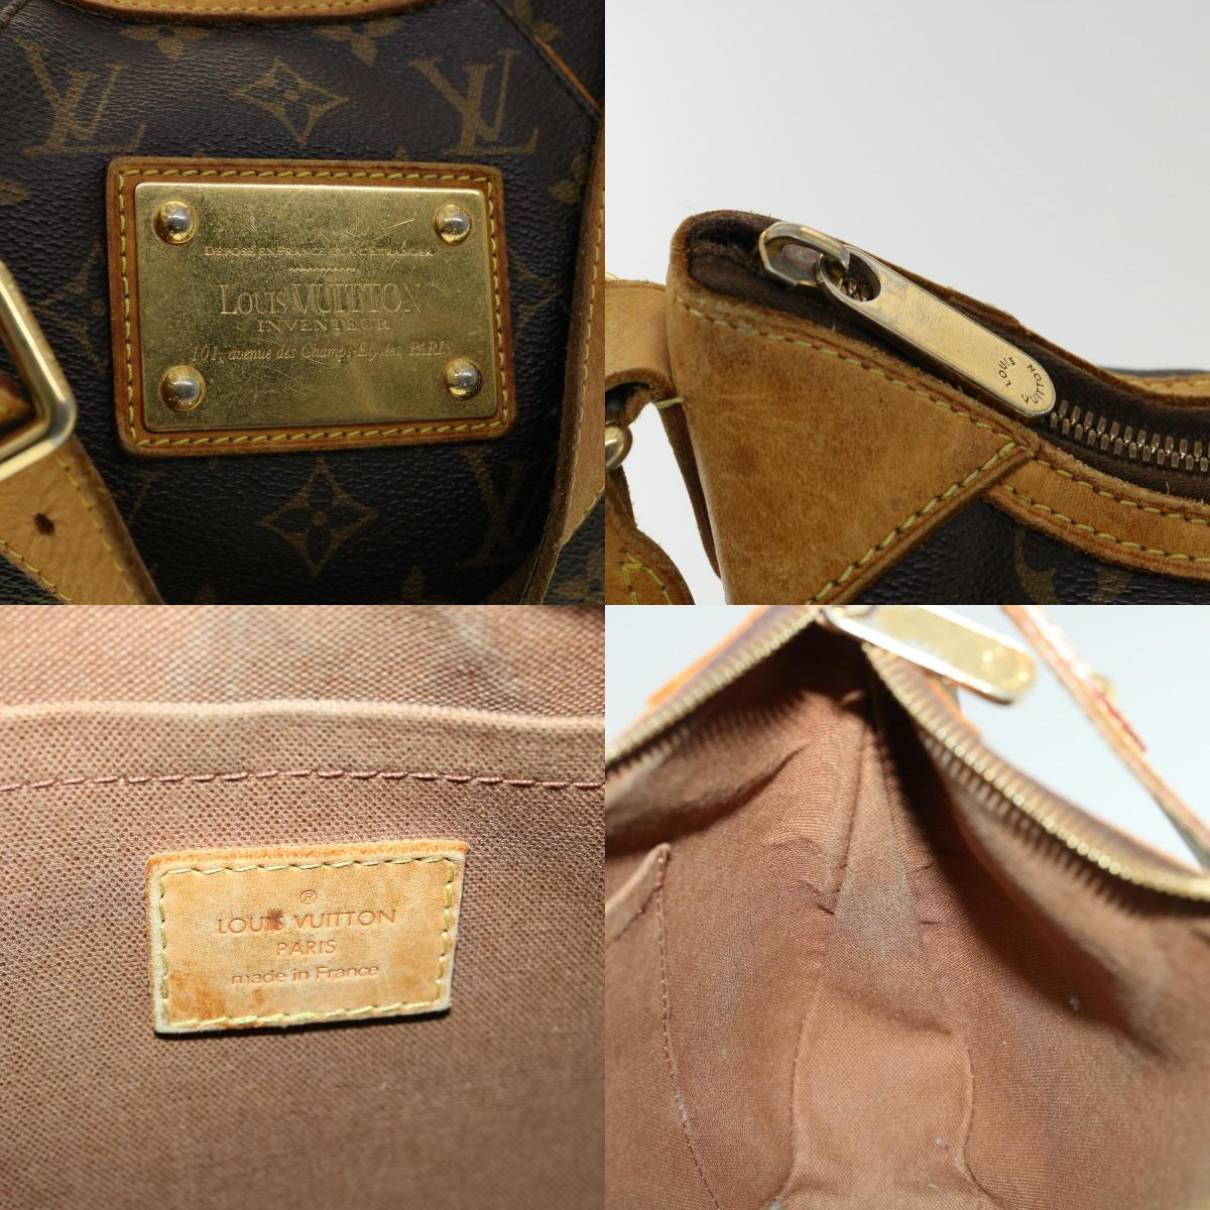 Thames cloth handbag Louis Vuitton Beige in Cloth - 32570749